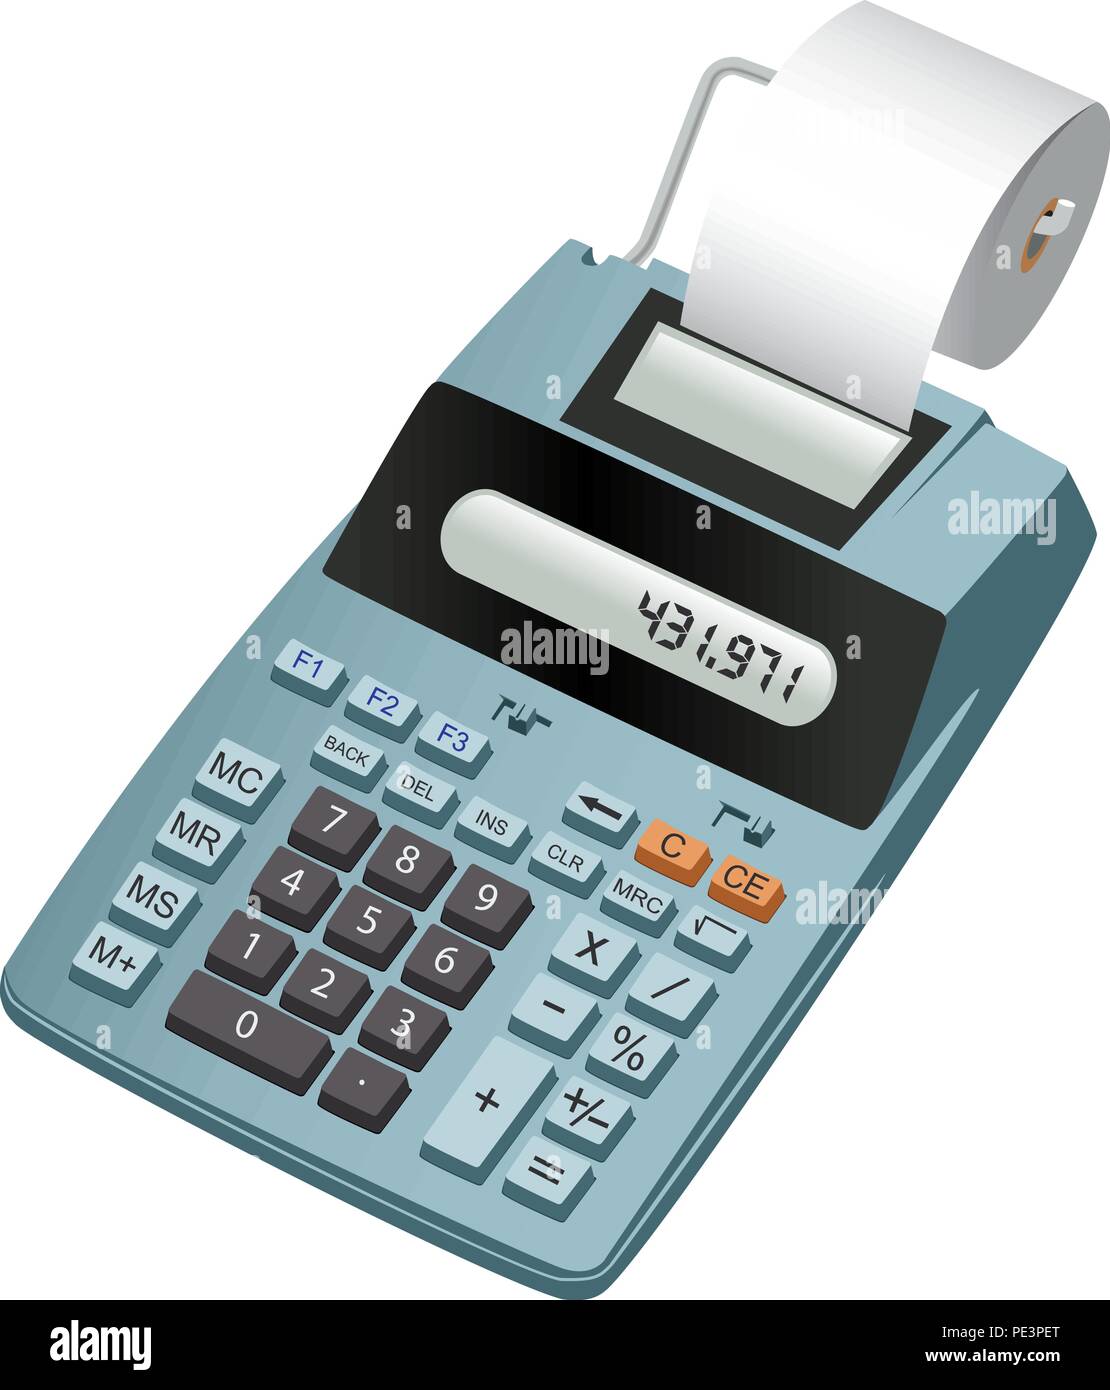 Realistische Abbildung eines elektronischen Taschenrechner mit Papierrolle.  Auf weiß Isoliert Stock-Vektorgrafik - Alamy